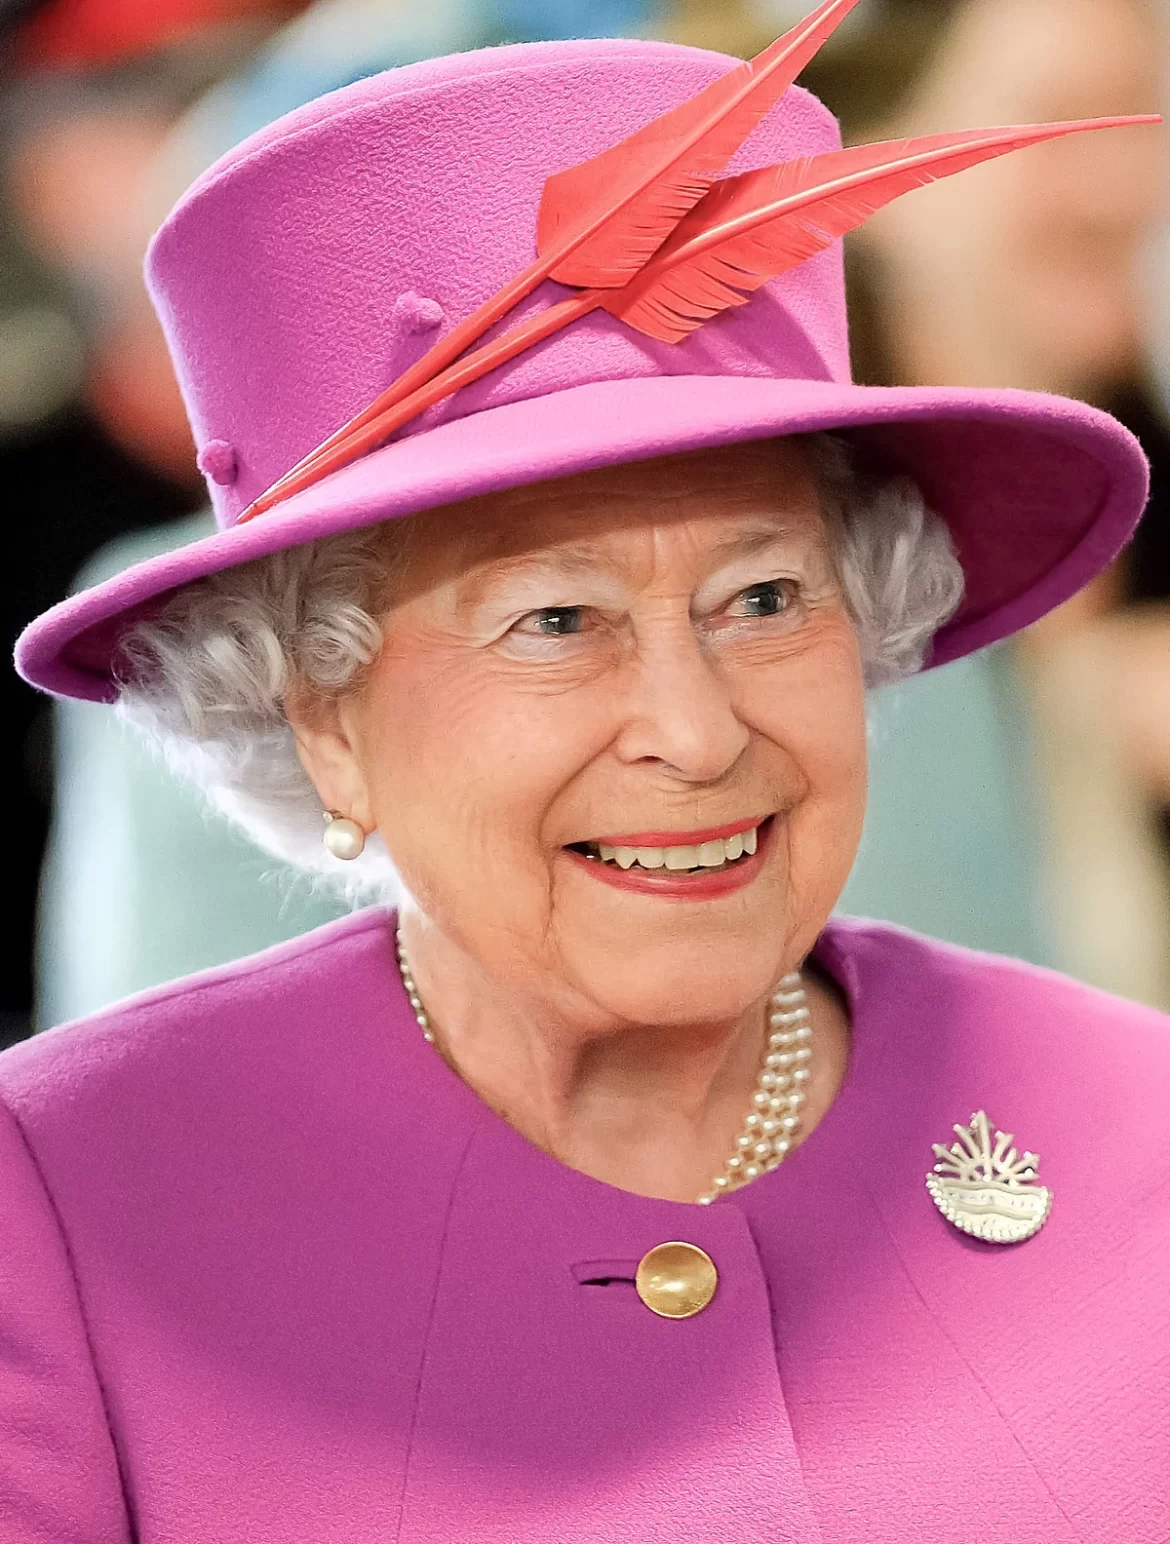 कौन है वे देश जिन्हे महारानी एलिजाबेथ द्वितीय के अंतिम संस्कार में निमंत्रण नहीं दिया गया